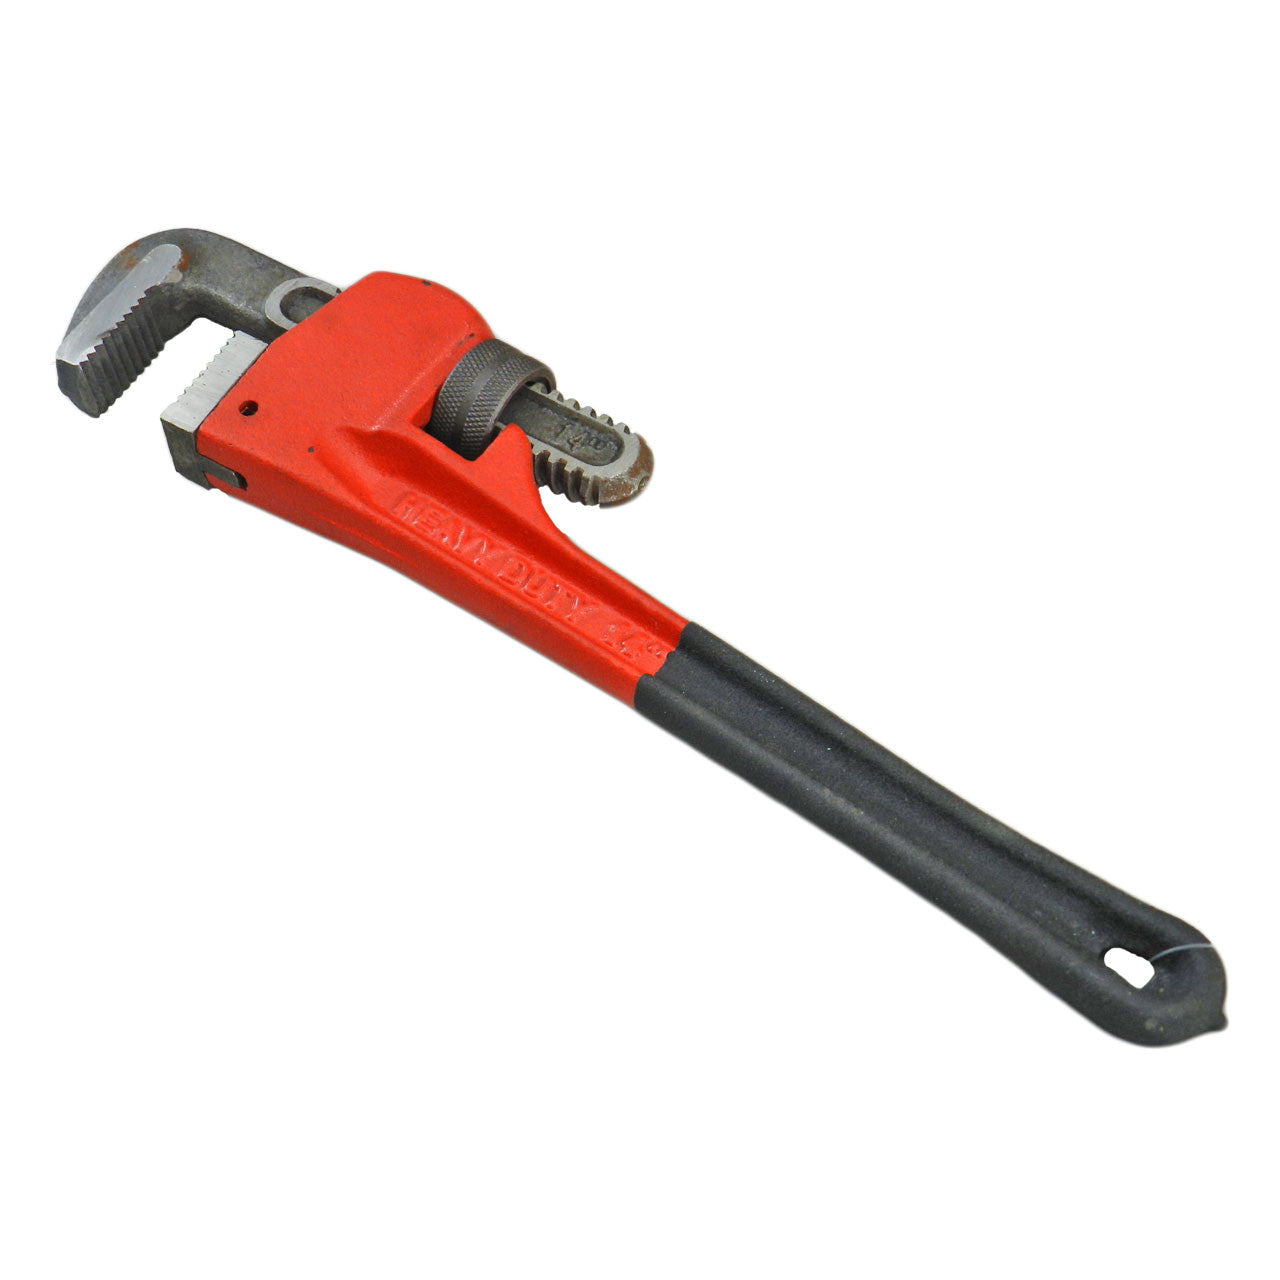 Pipe Wrench - Heavy Duty